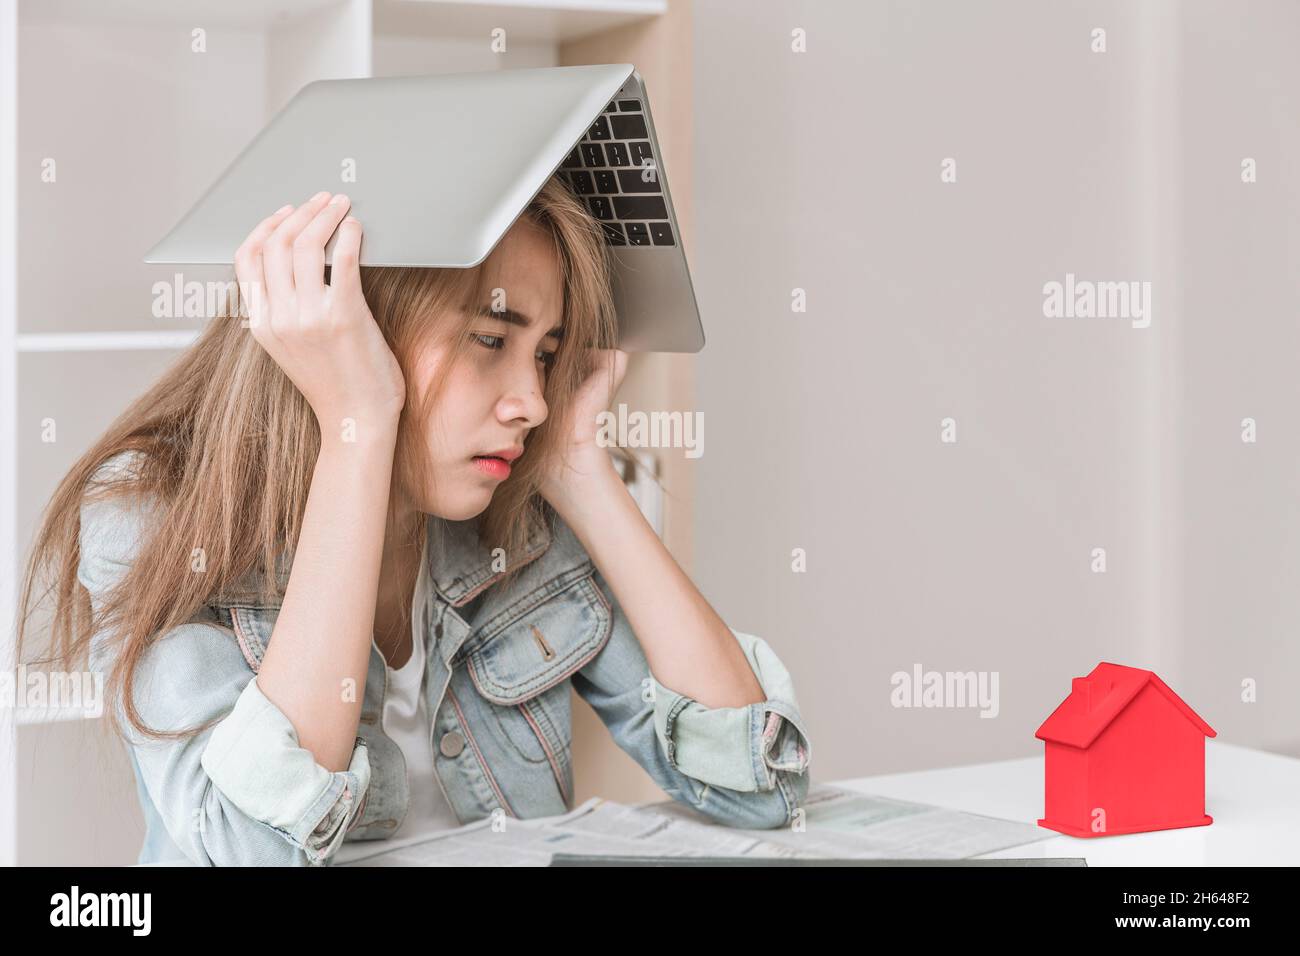 Menschen teen Mädchen Stress Sorge mit Hauskosten und Schulden Konzept Stockfoto